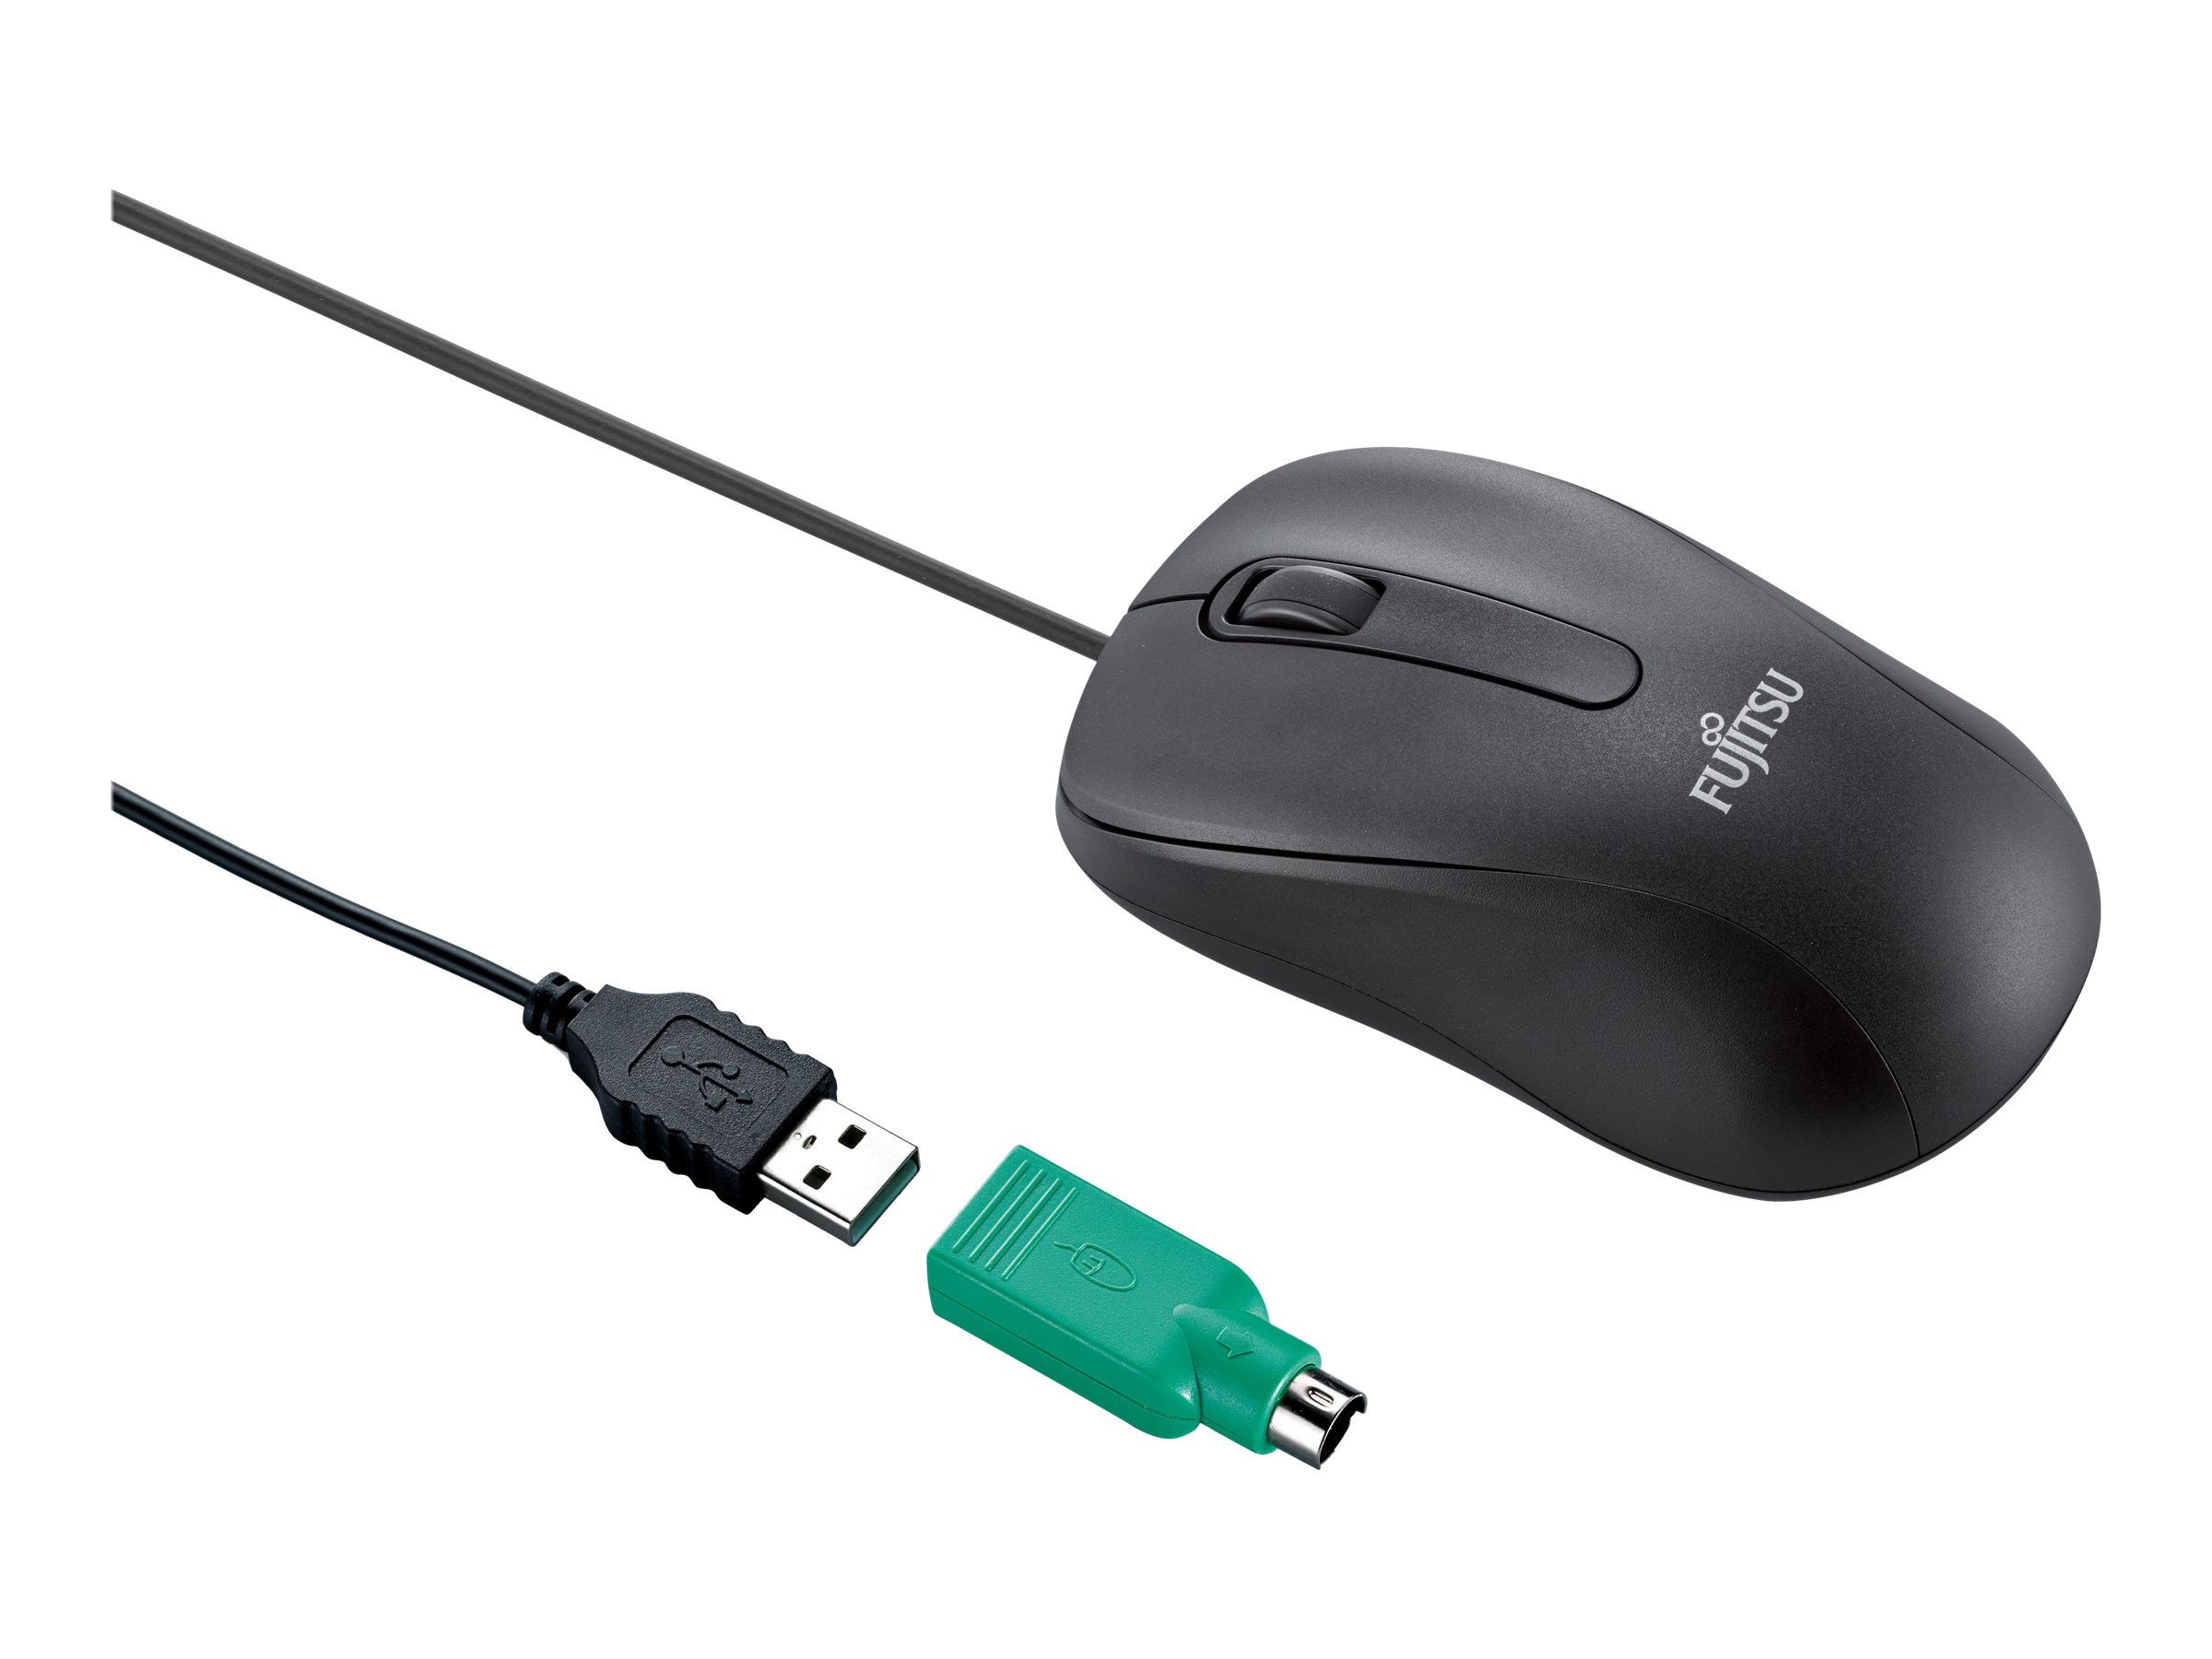 Fujitsu M530 - Maus - rechts- und linkshndig - Laser - 3 Tasten - kabelgebunden